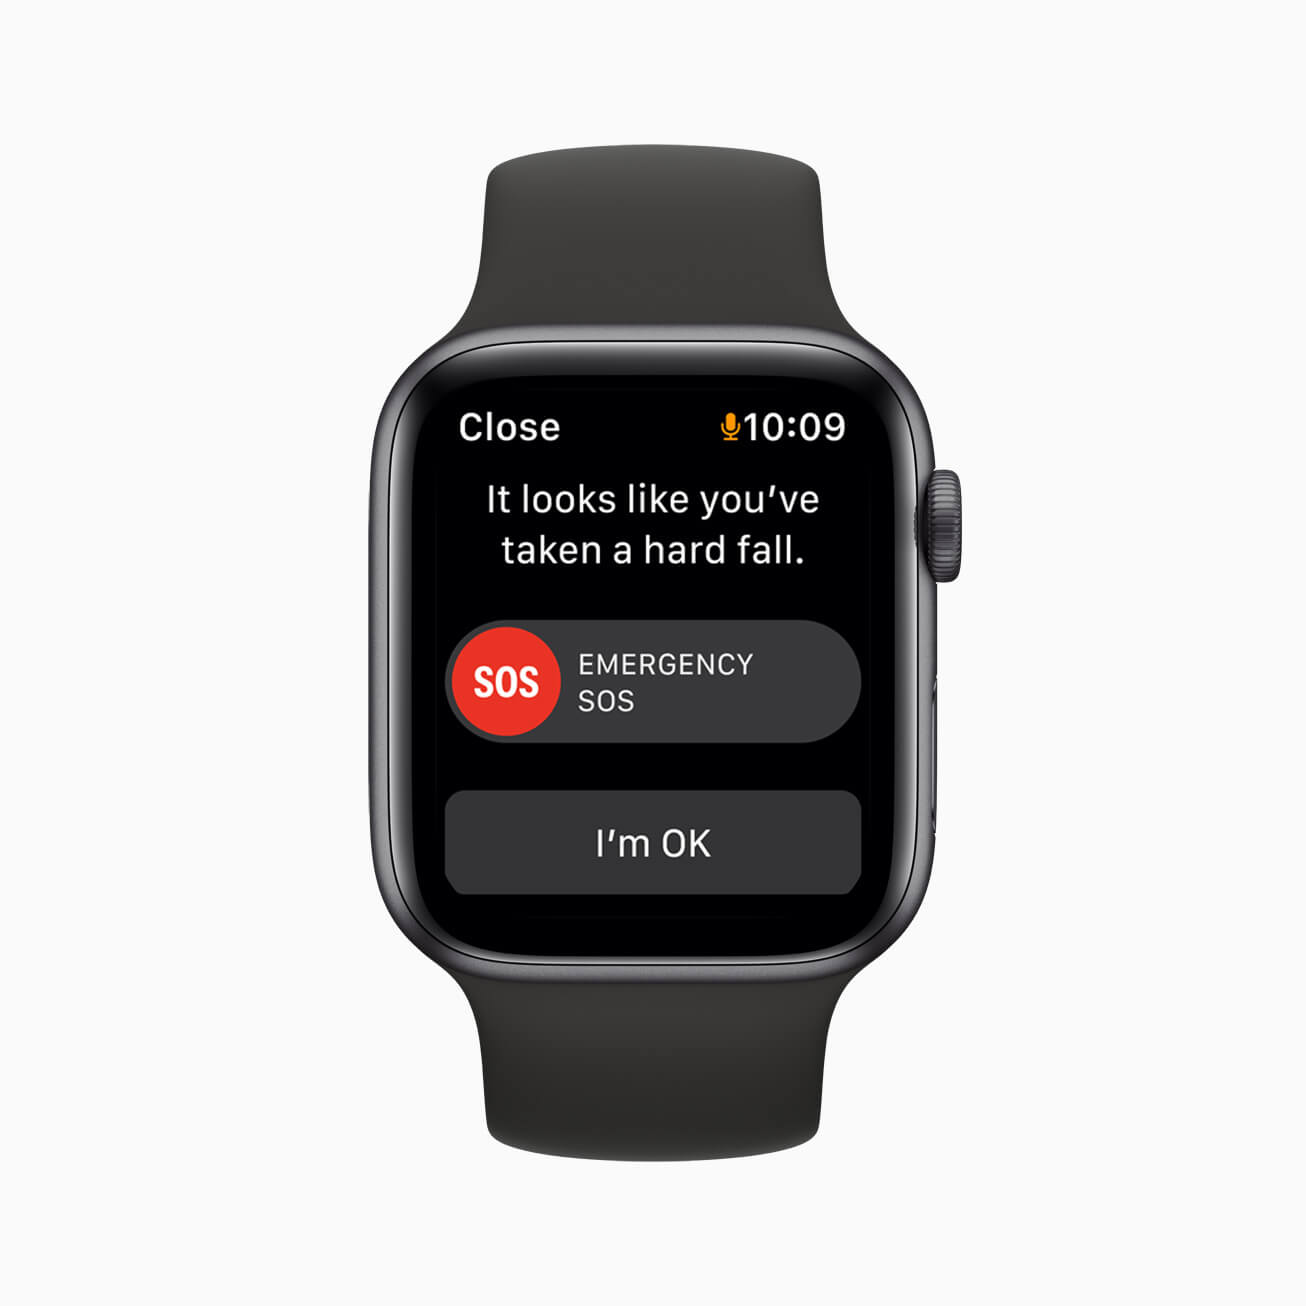 De valdetectie werkt ook prima op de Apple Watch SE